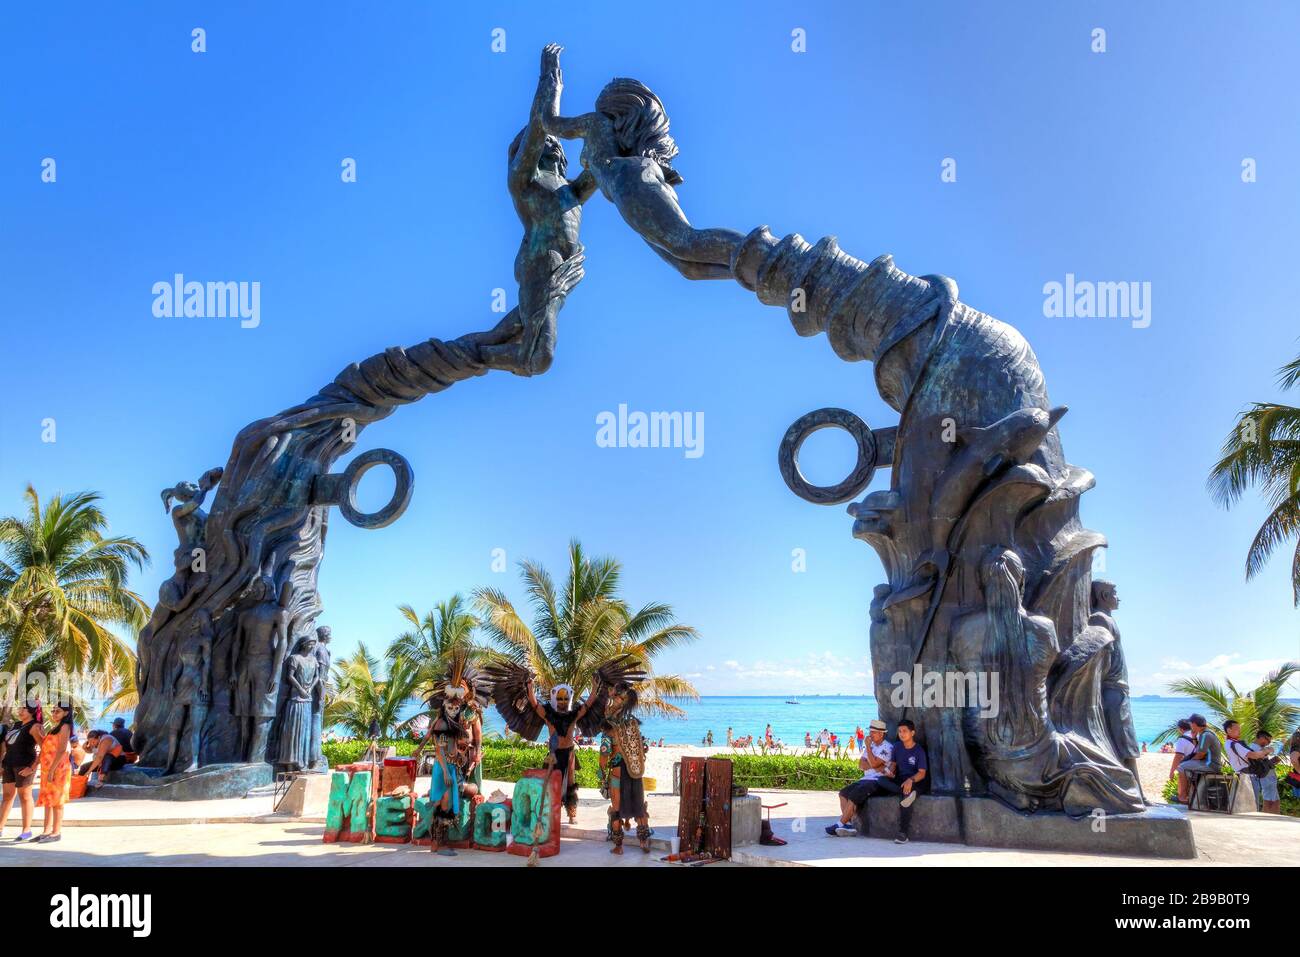 PLAYA DEL CARMEN, MEXIKO - DEC. 26, 2019: Besucher mischen sich am Strand des Fundadores Park an der Playa del Carmen an der karibischen Küste der Riviera Maya mit p Stockfoto